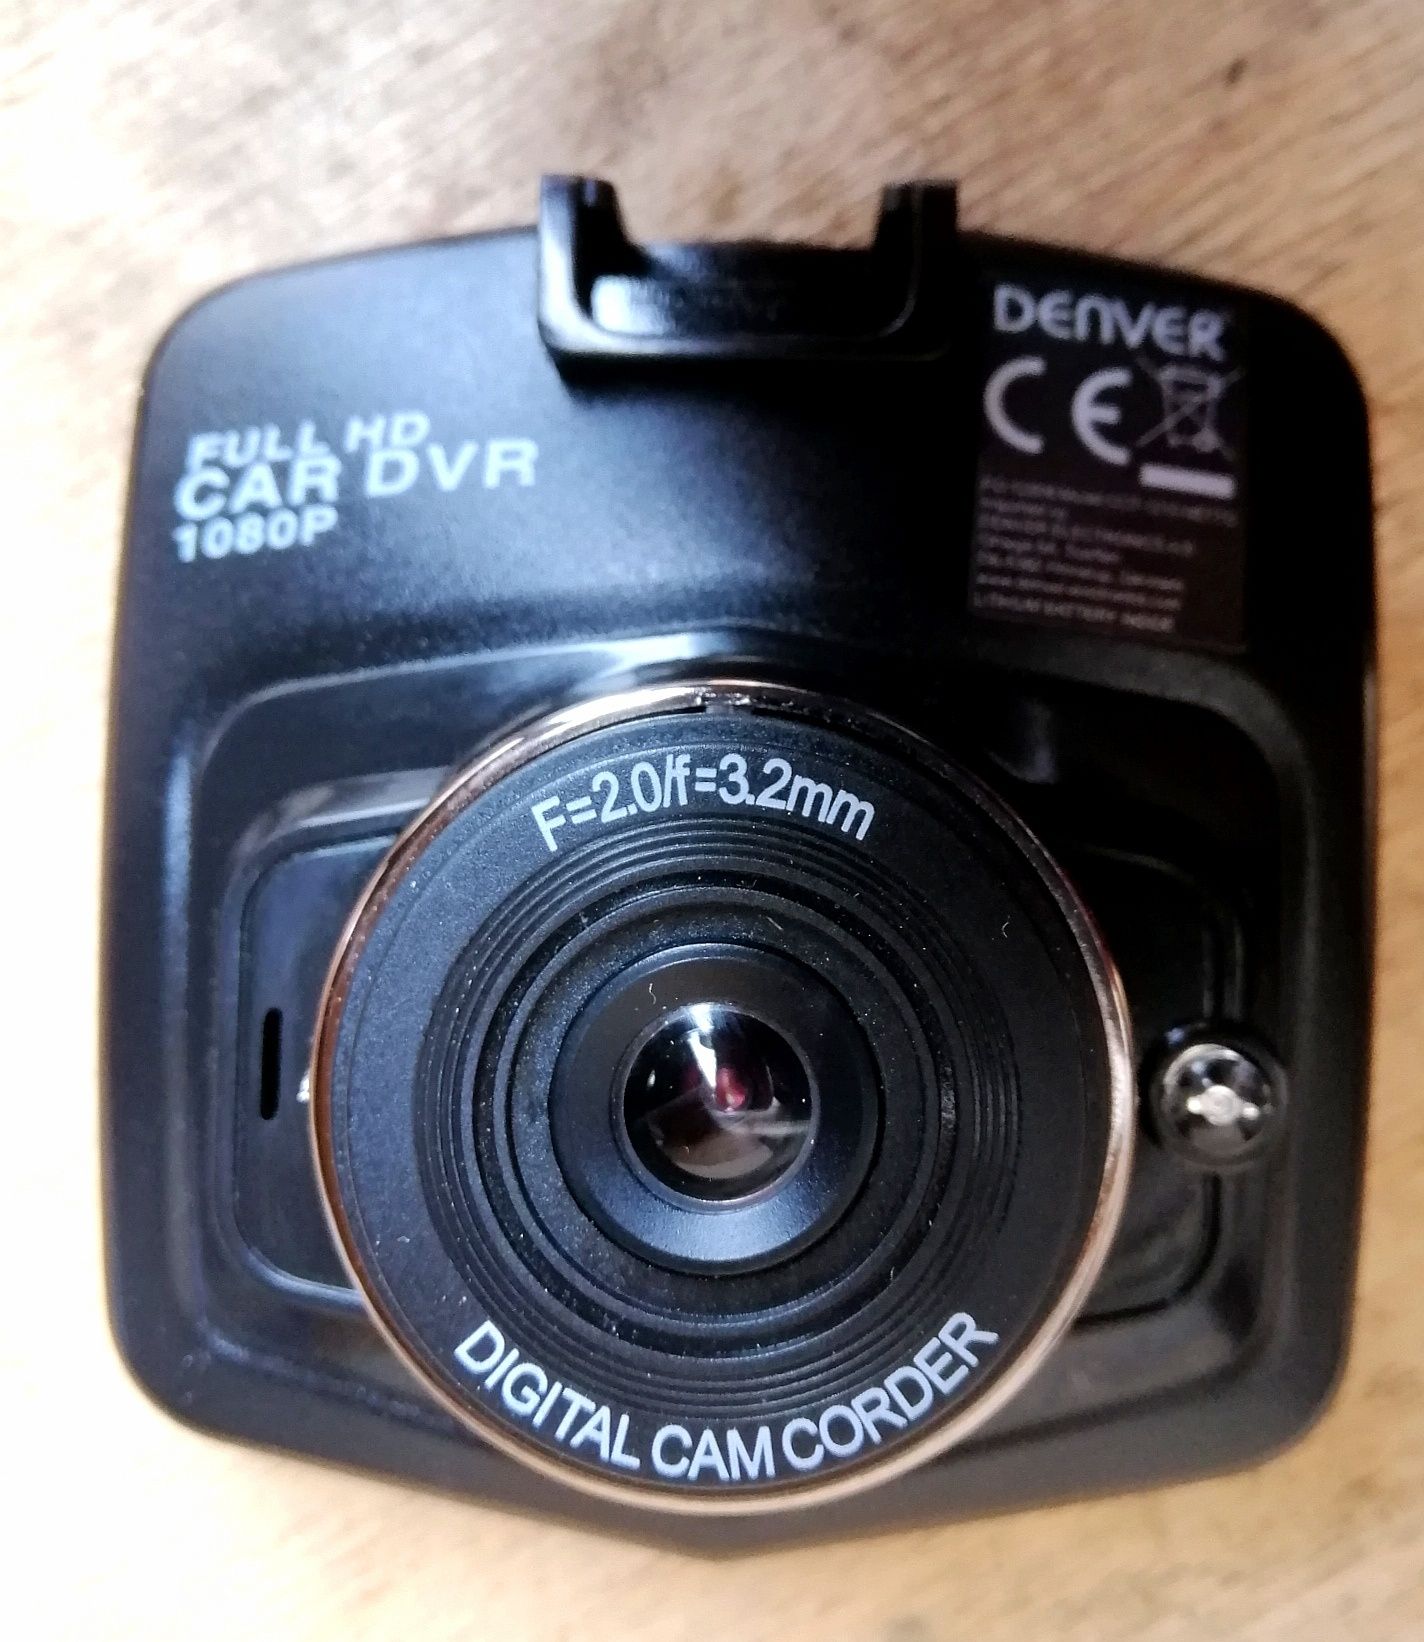 Камера samochodowa denver cct-1210 mk3